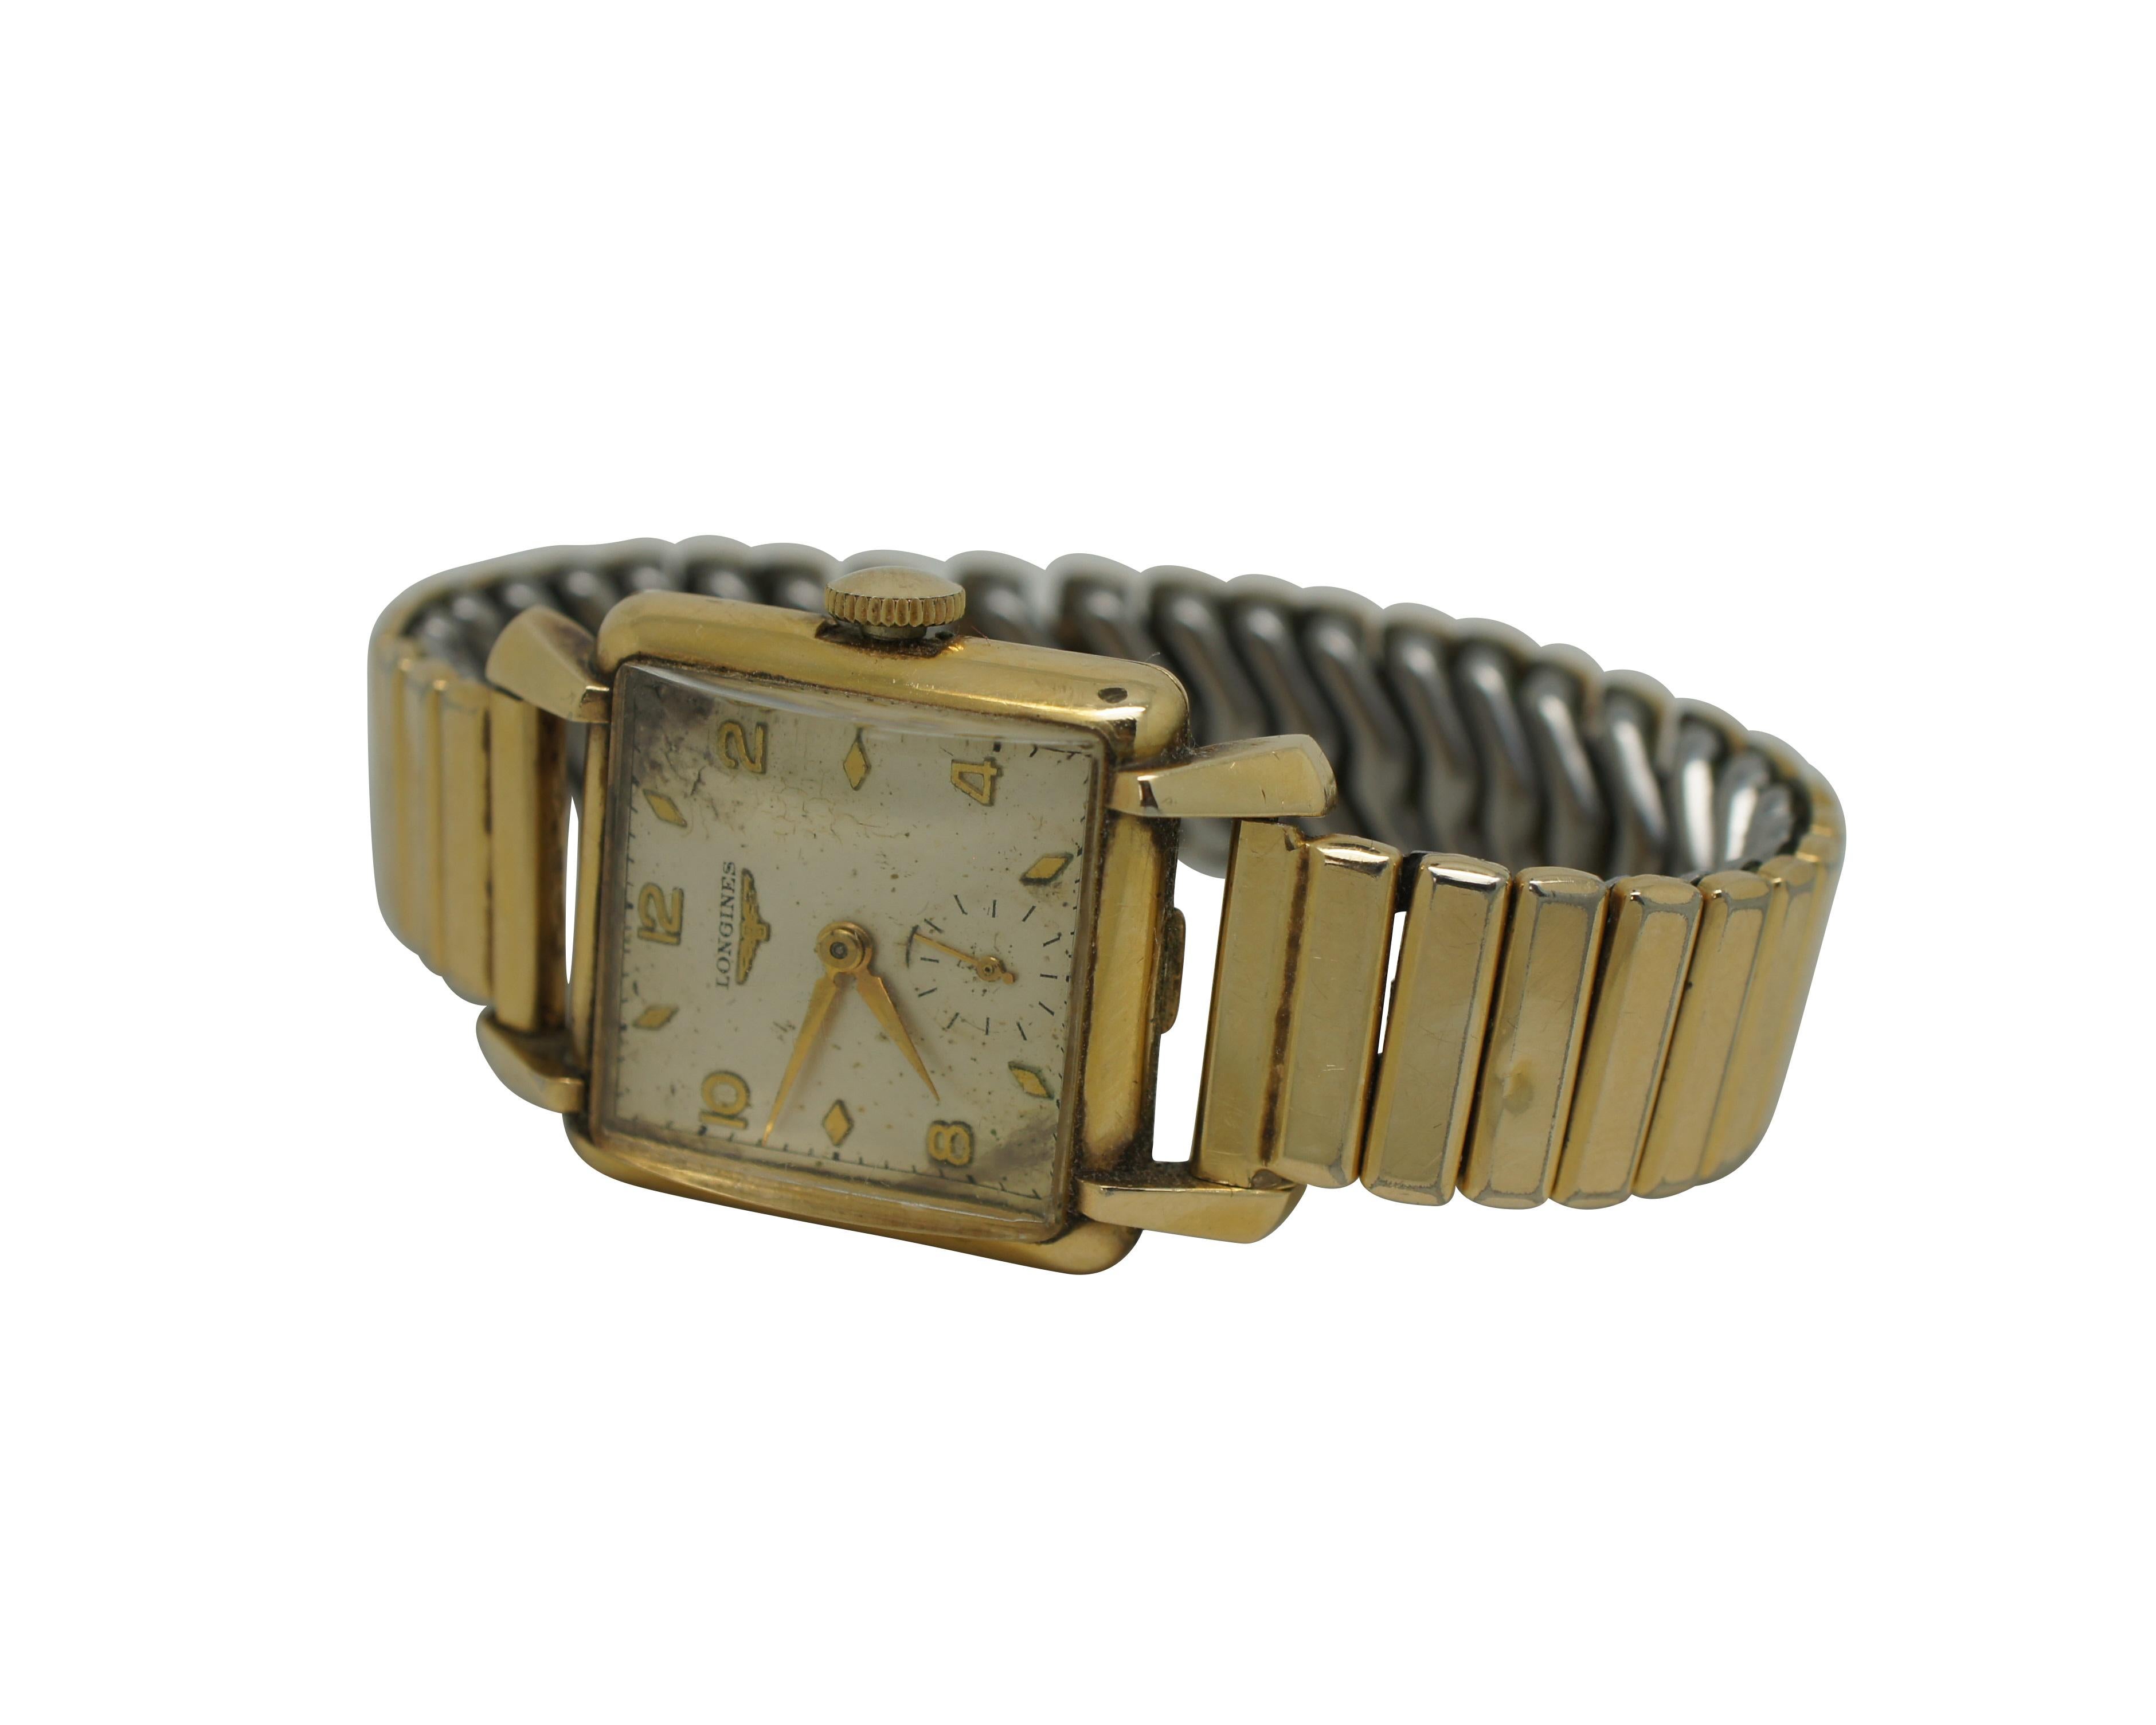 Vintage Longines 10k Gold gefüllt Handgelenk Uhr mit einem Pontiac strech Band.  CIRCA 1950er Jahre, Ser.-Nr. 7915121

Die Original-Seriennummer 7'915'121 kennzeichnet eine gelbvergoldete Armbanduhr mit der Referenz 6069. Sie ist mit einem